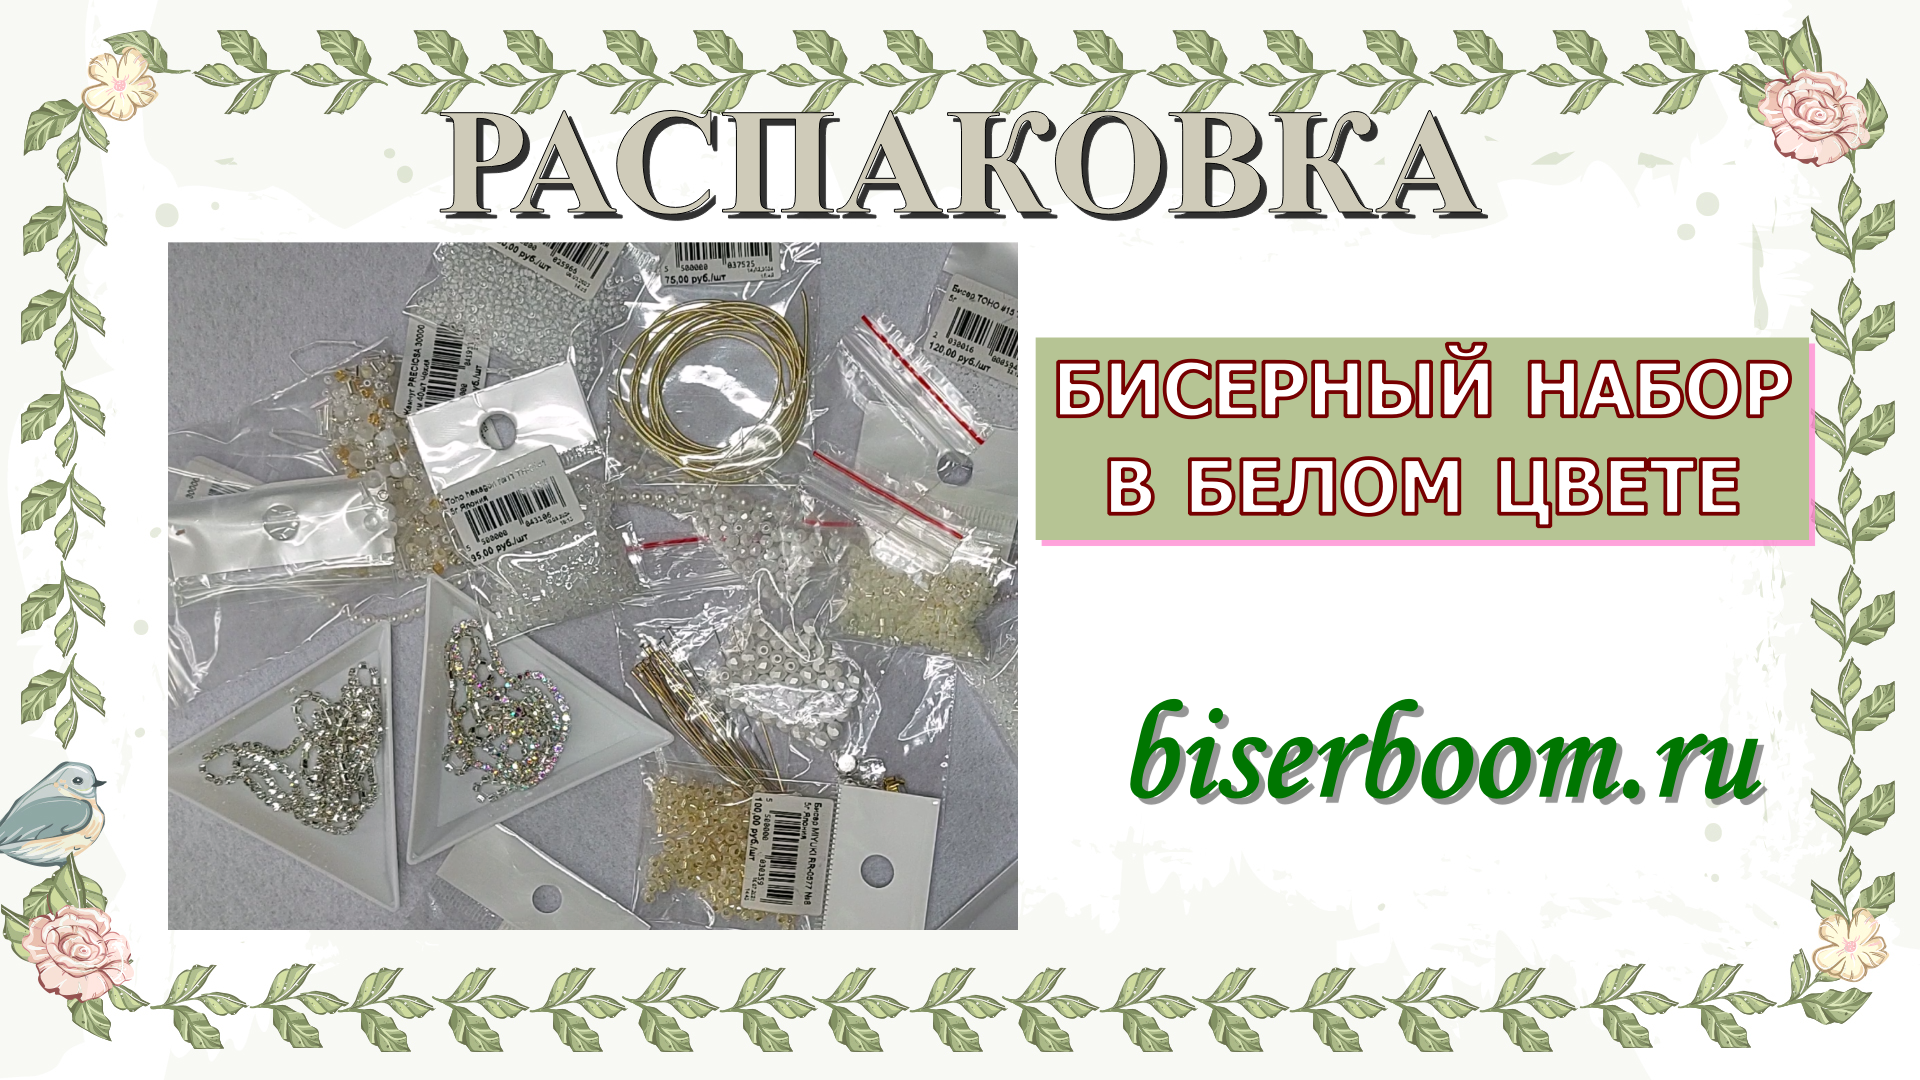 Распаковка бисерных наборов в белом цвете от магазина Biserboom